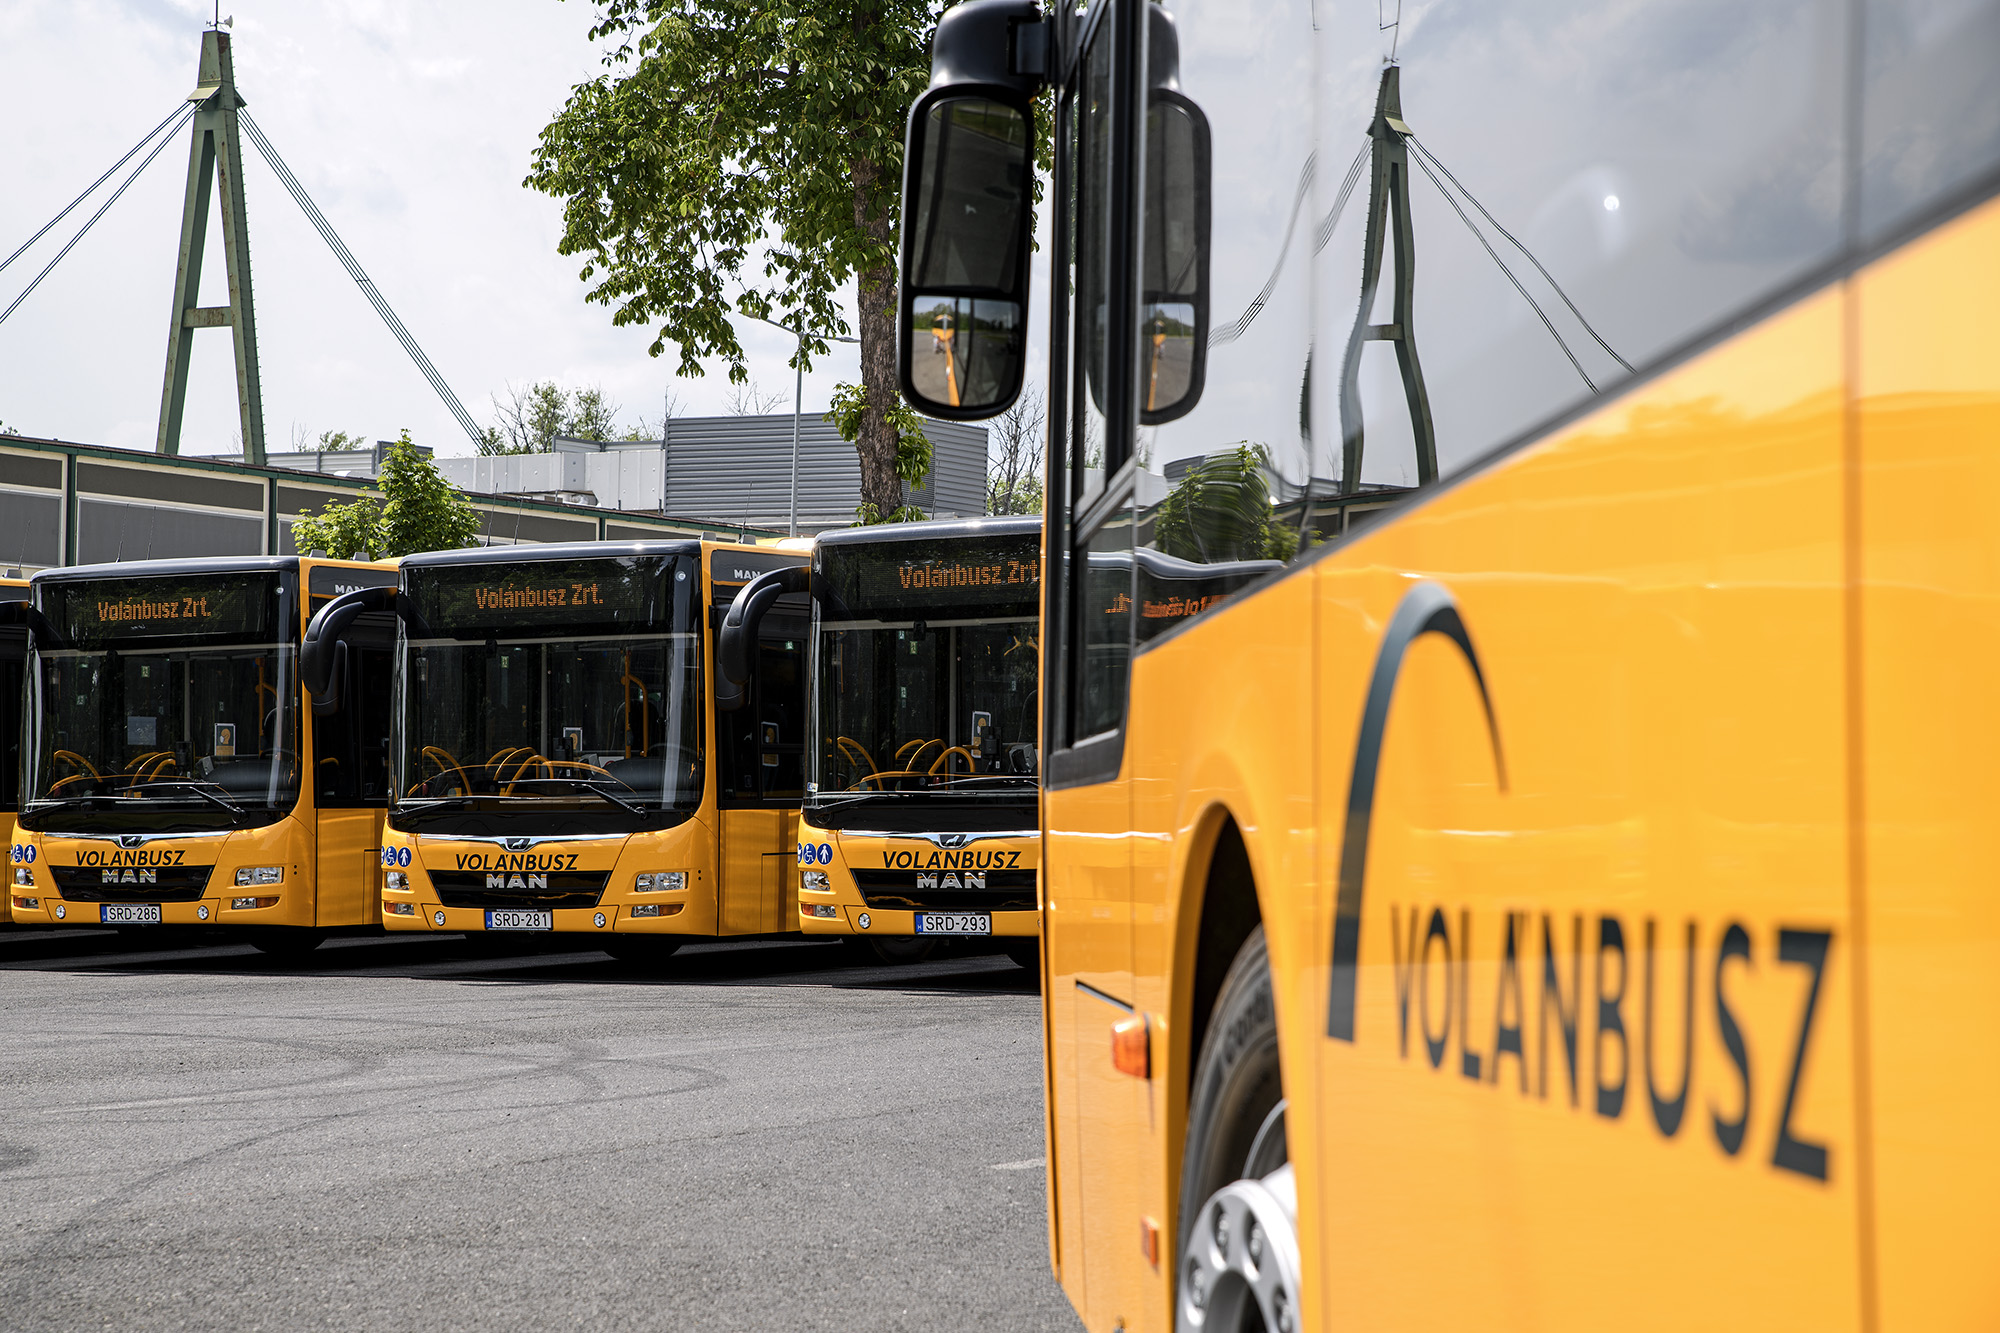 Az újonnan forgalomba helyezett MAN Lion’s City GL A23 típusú csuklós autóbuszok láthatók a képen.